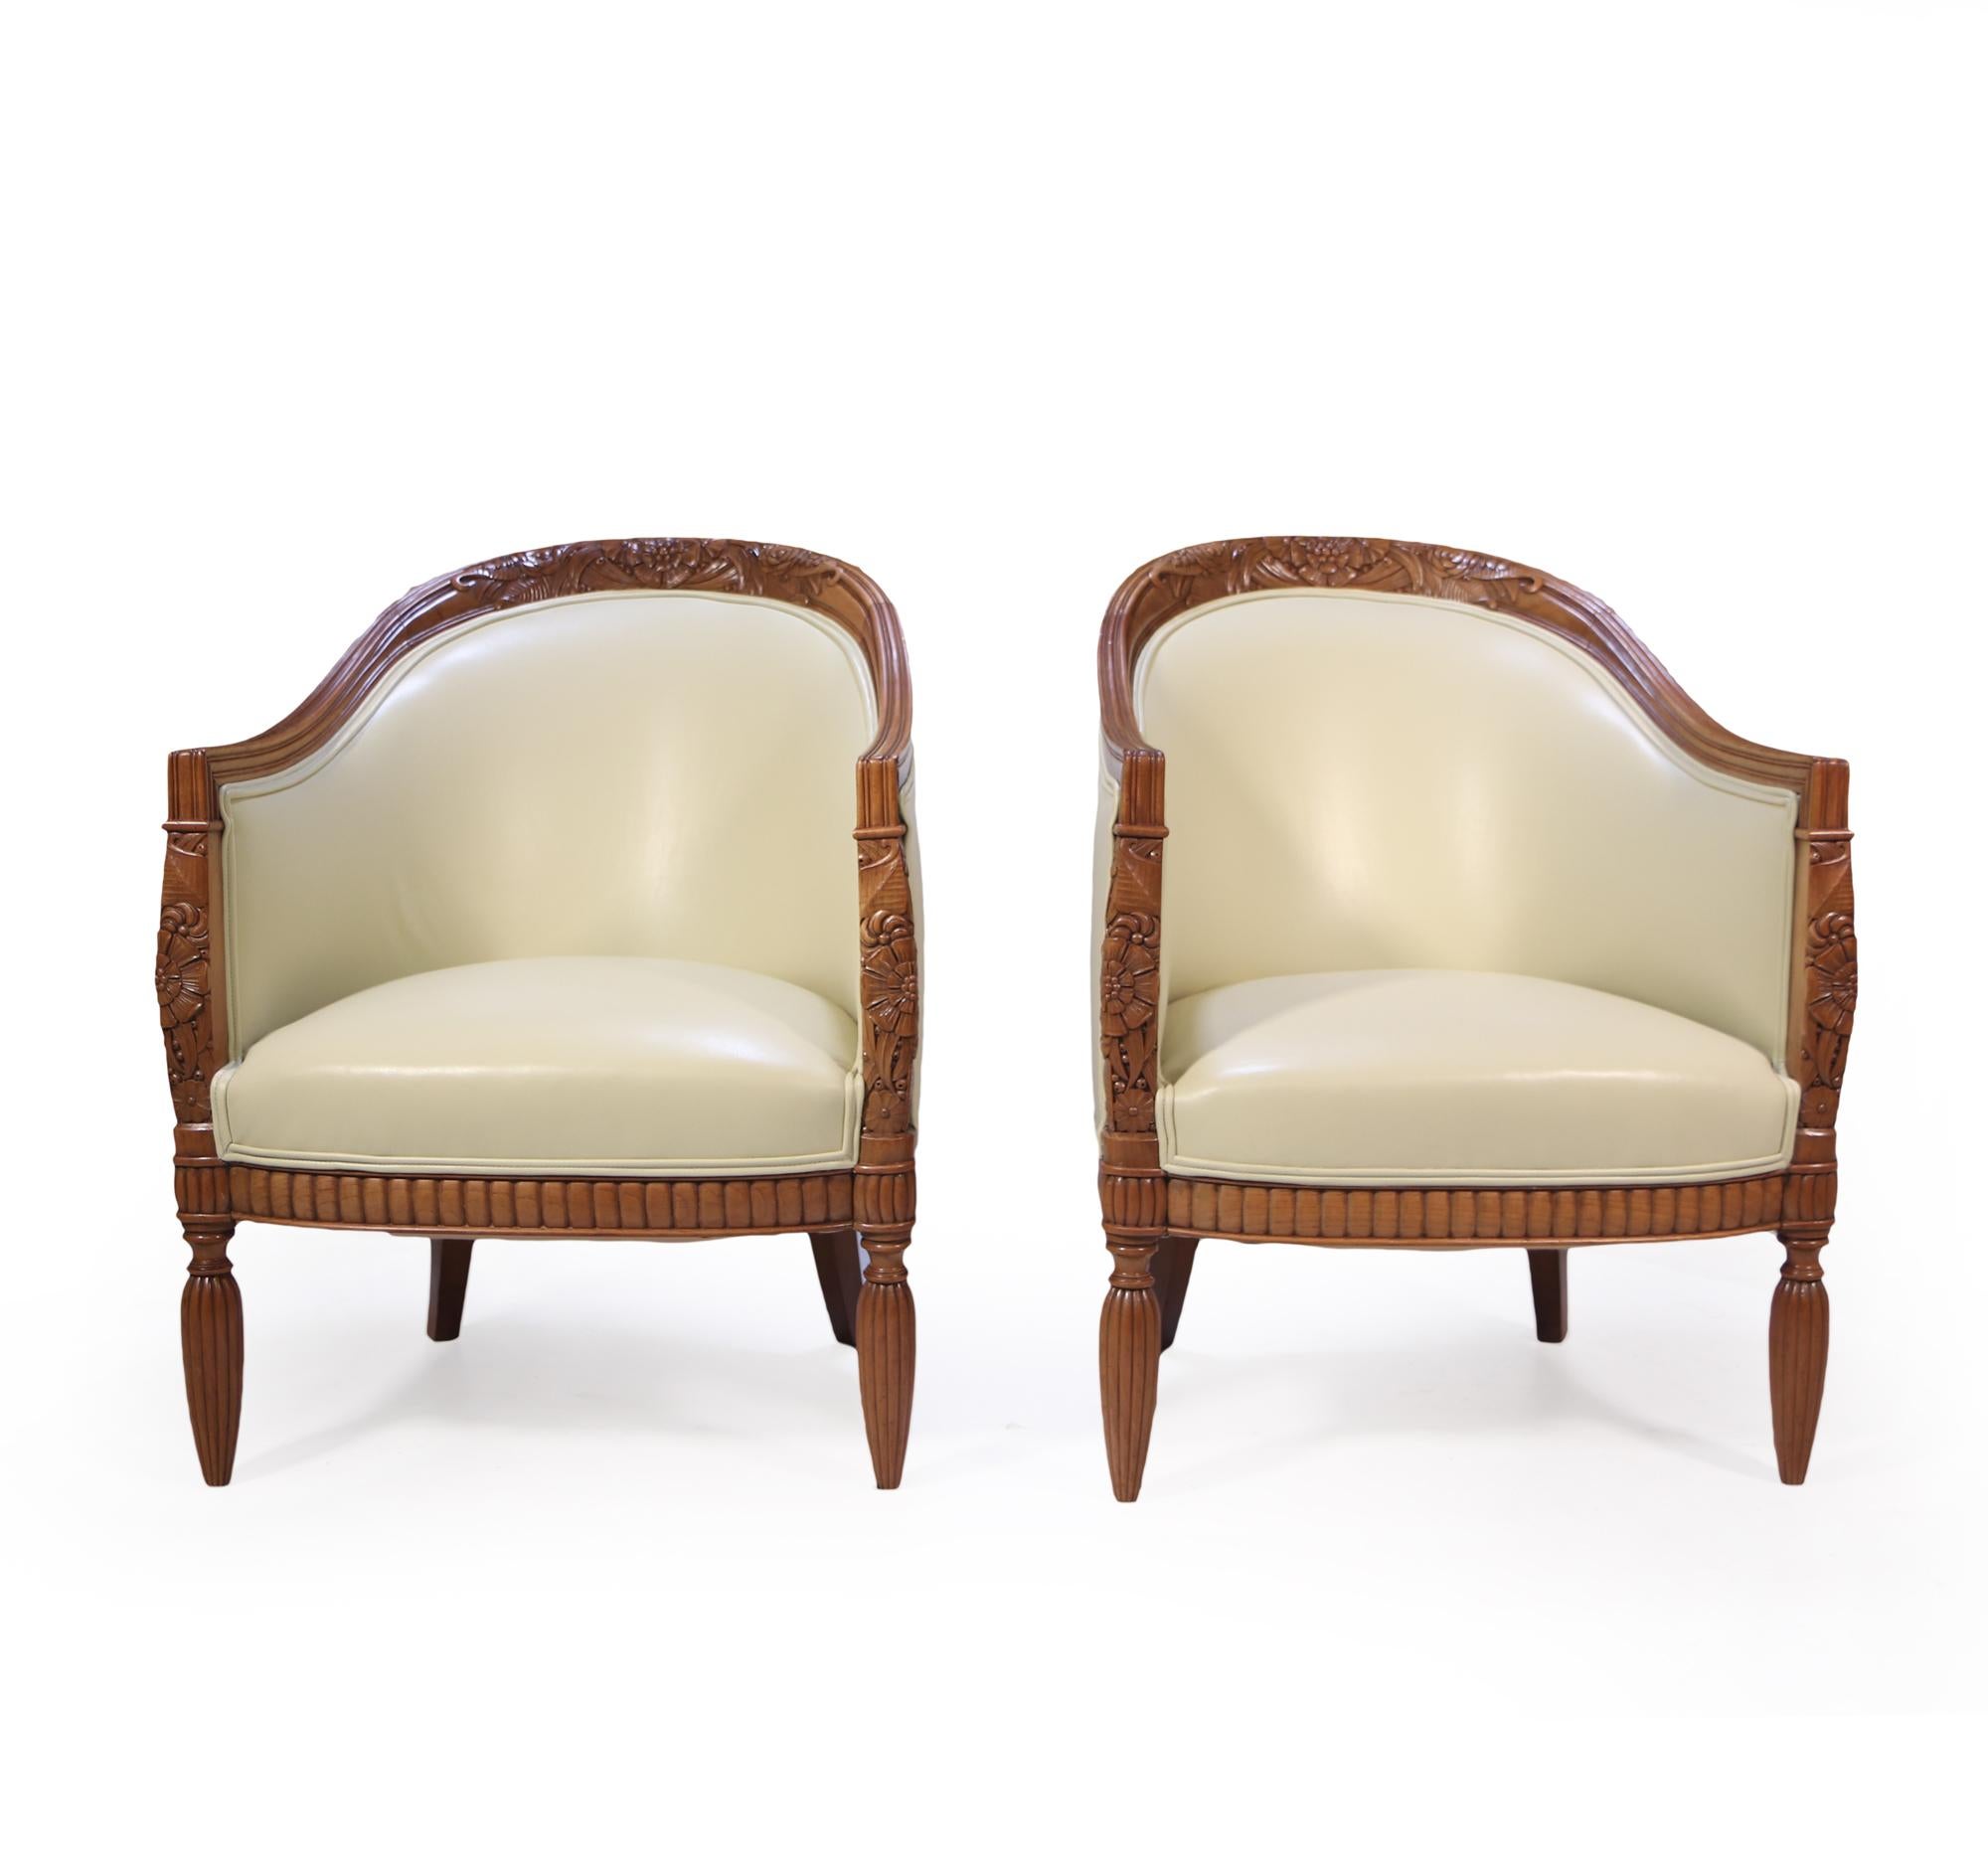 Ein außergewöhnliches Paar fein ausgehöhlte und skulpturale Sessel, hergestellt in Frankreich in den 1920er Jahren die Frames sind massiv Birne, die Stühle wurden vollständig gepolstert und in Creme Farbe weiches Leder Hyde bezogen.

Alter: